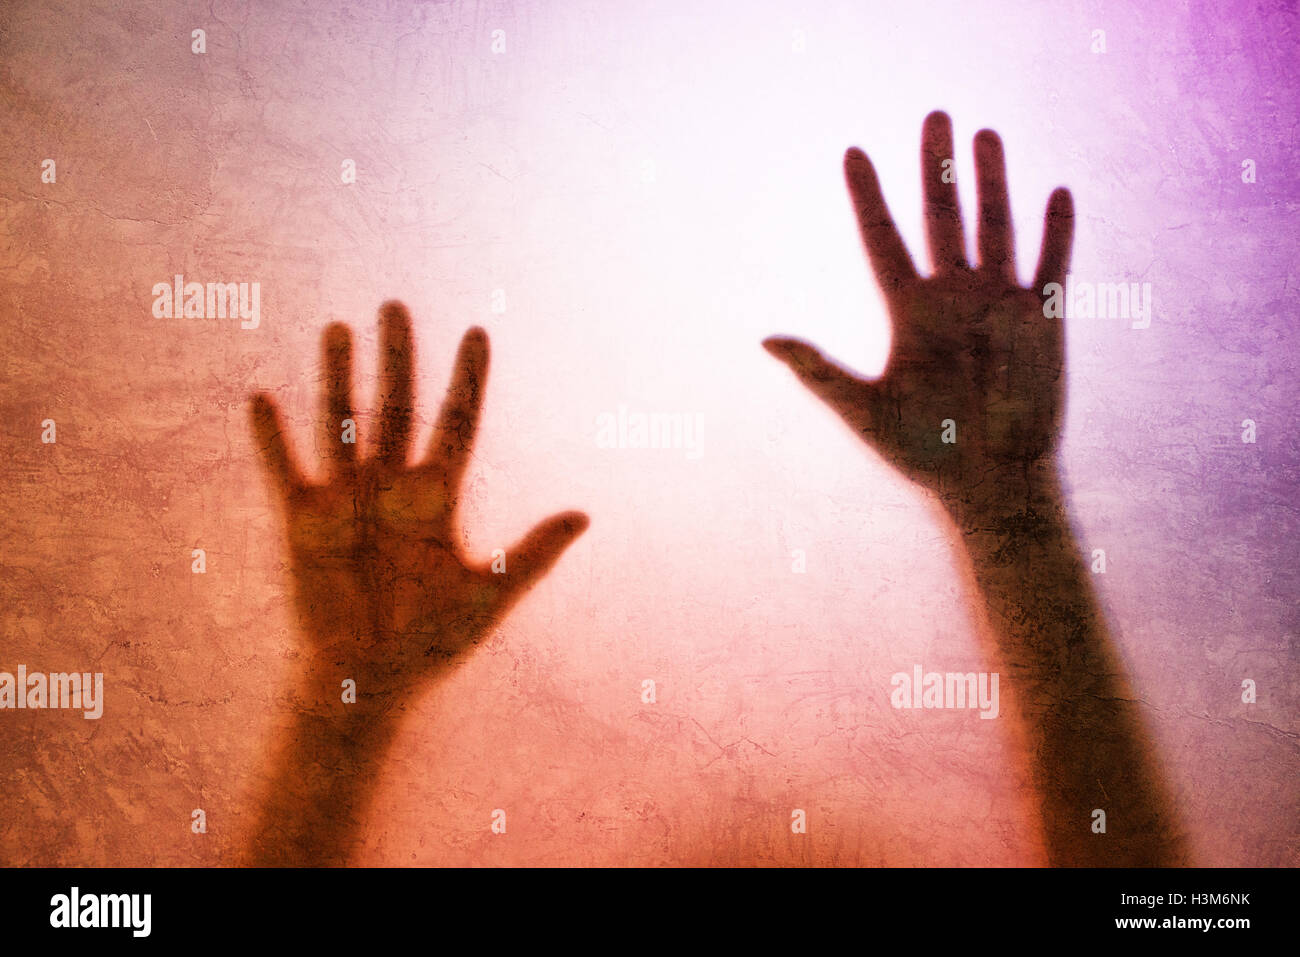 Catturato persona di sesso femminile concetto con back lit silhouette di mani dietro il vetro opaco, utili come immagine illustrativa per traf umana Foto Stock